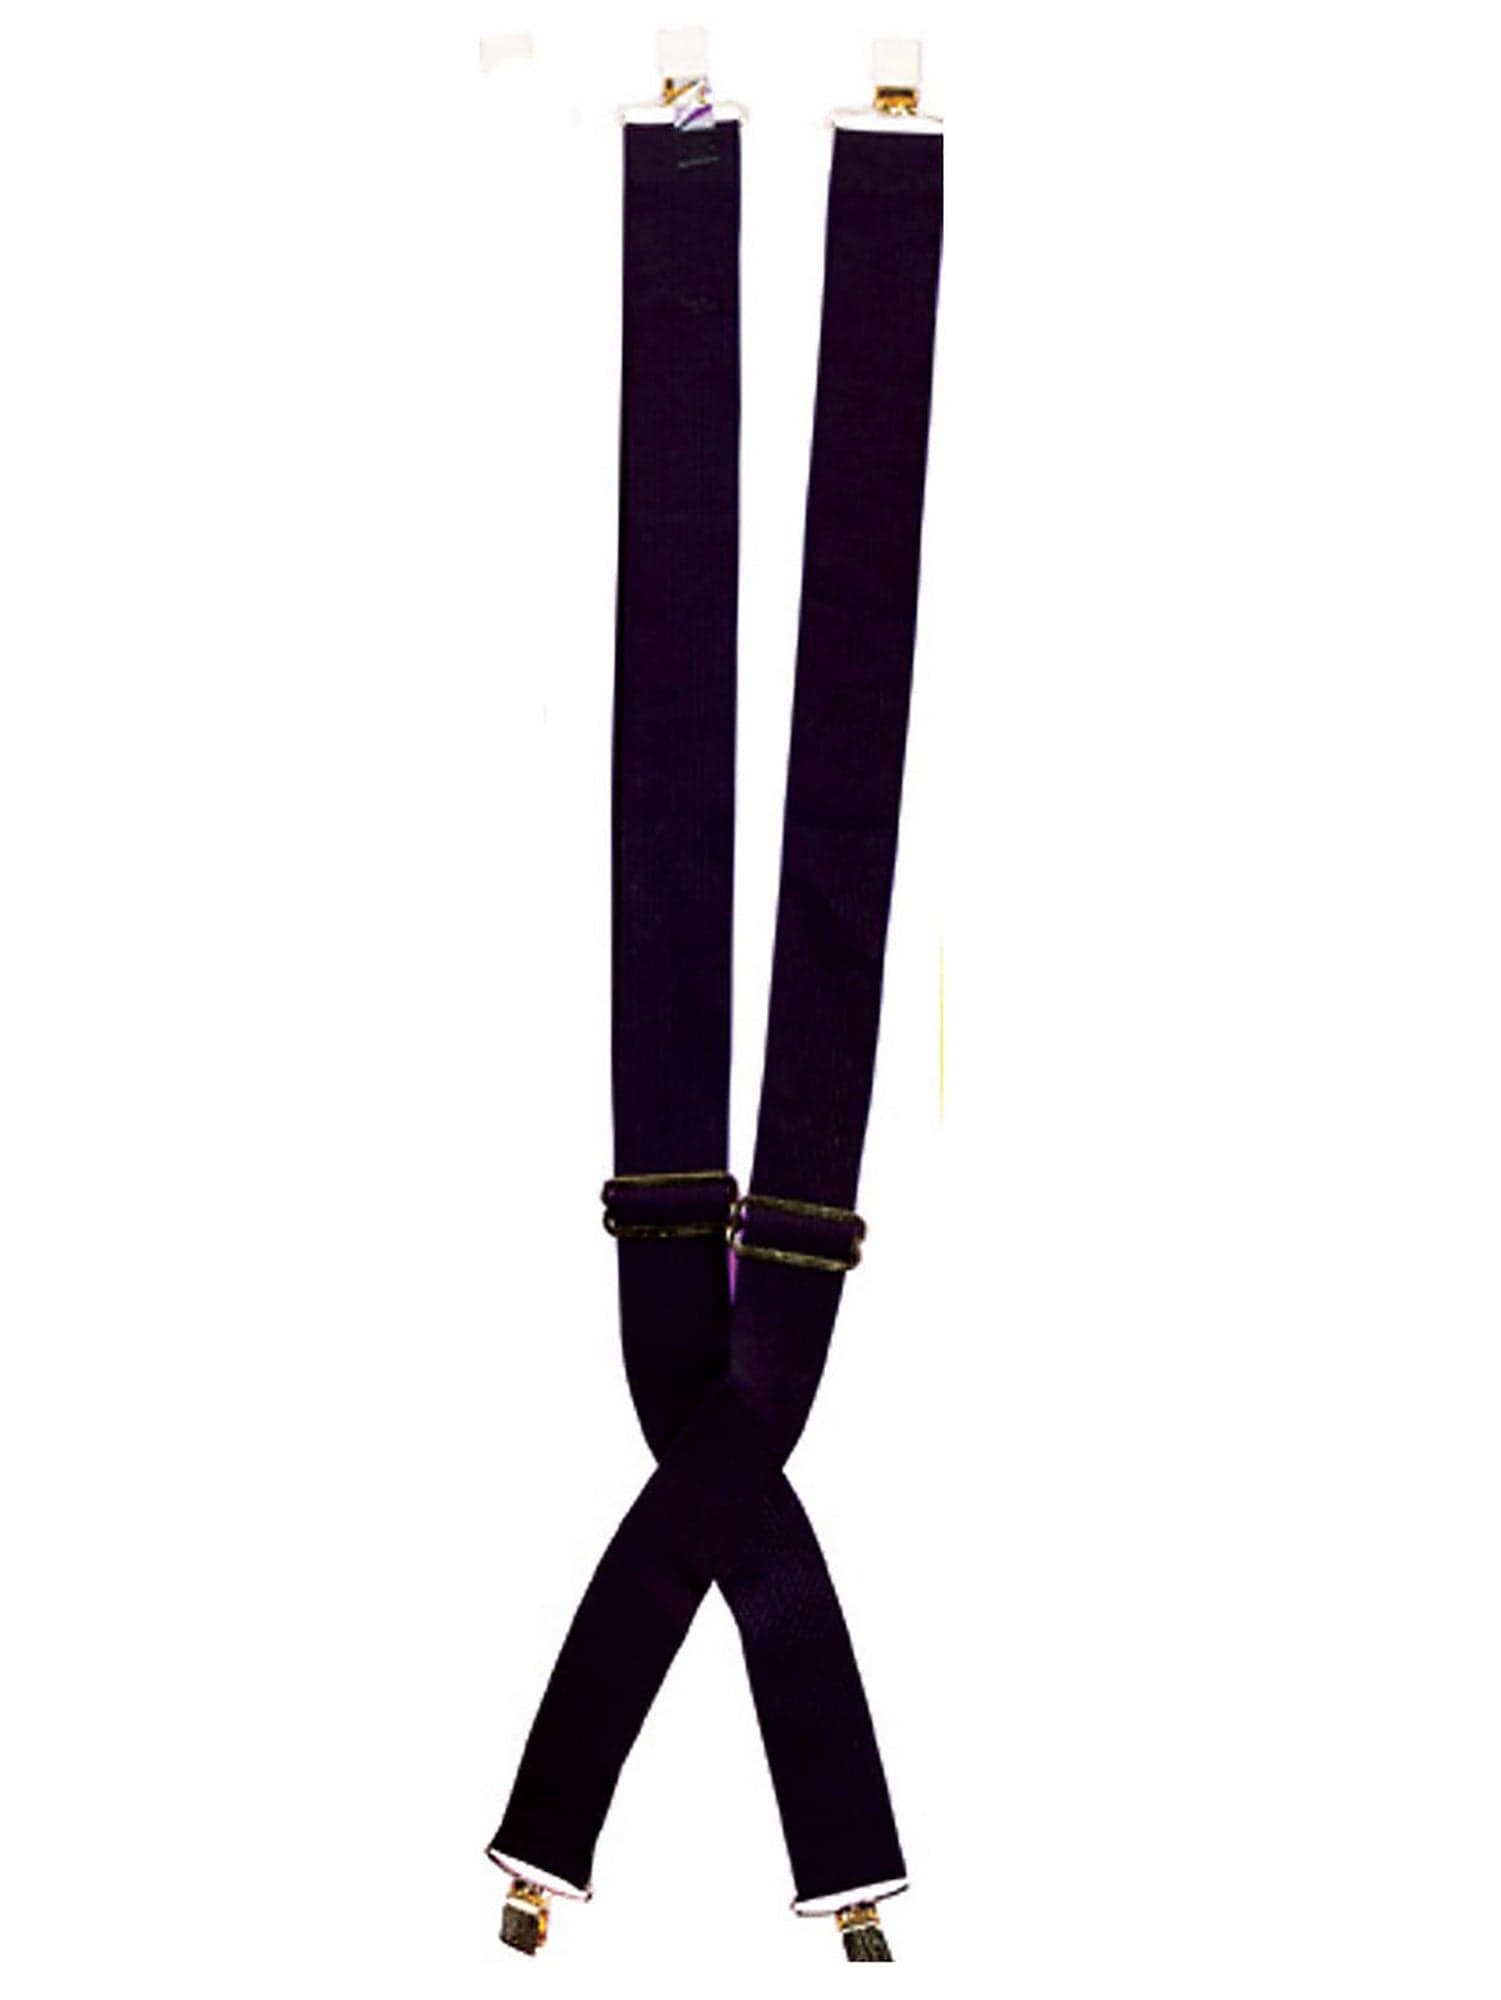 Suspenders - Black - costumes.com